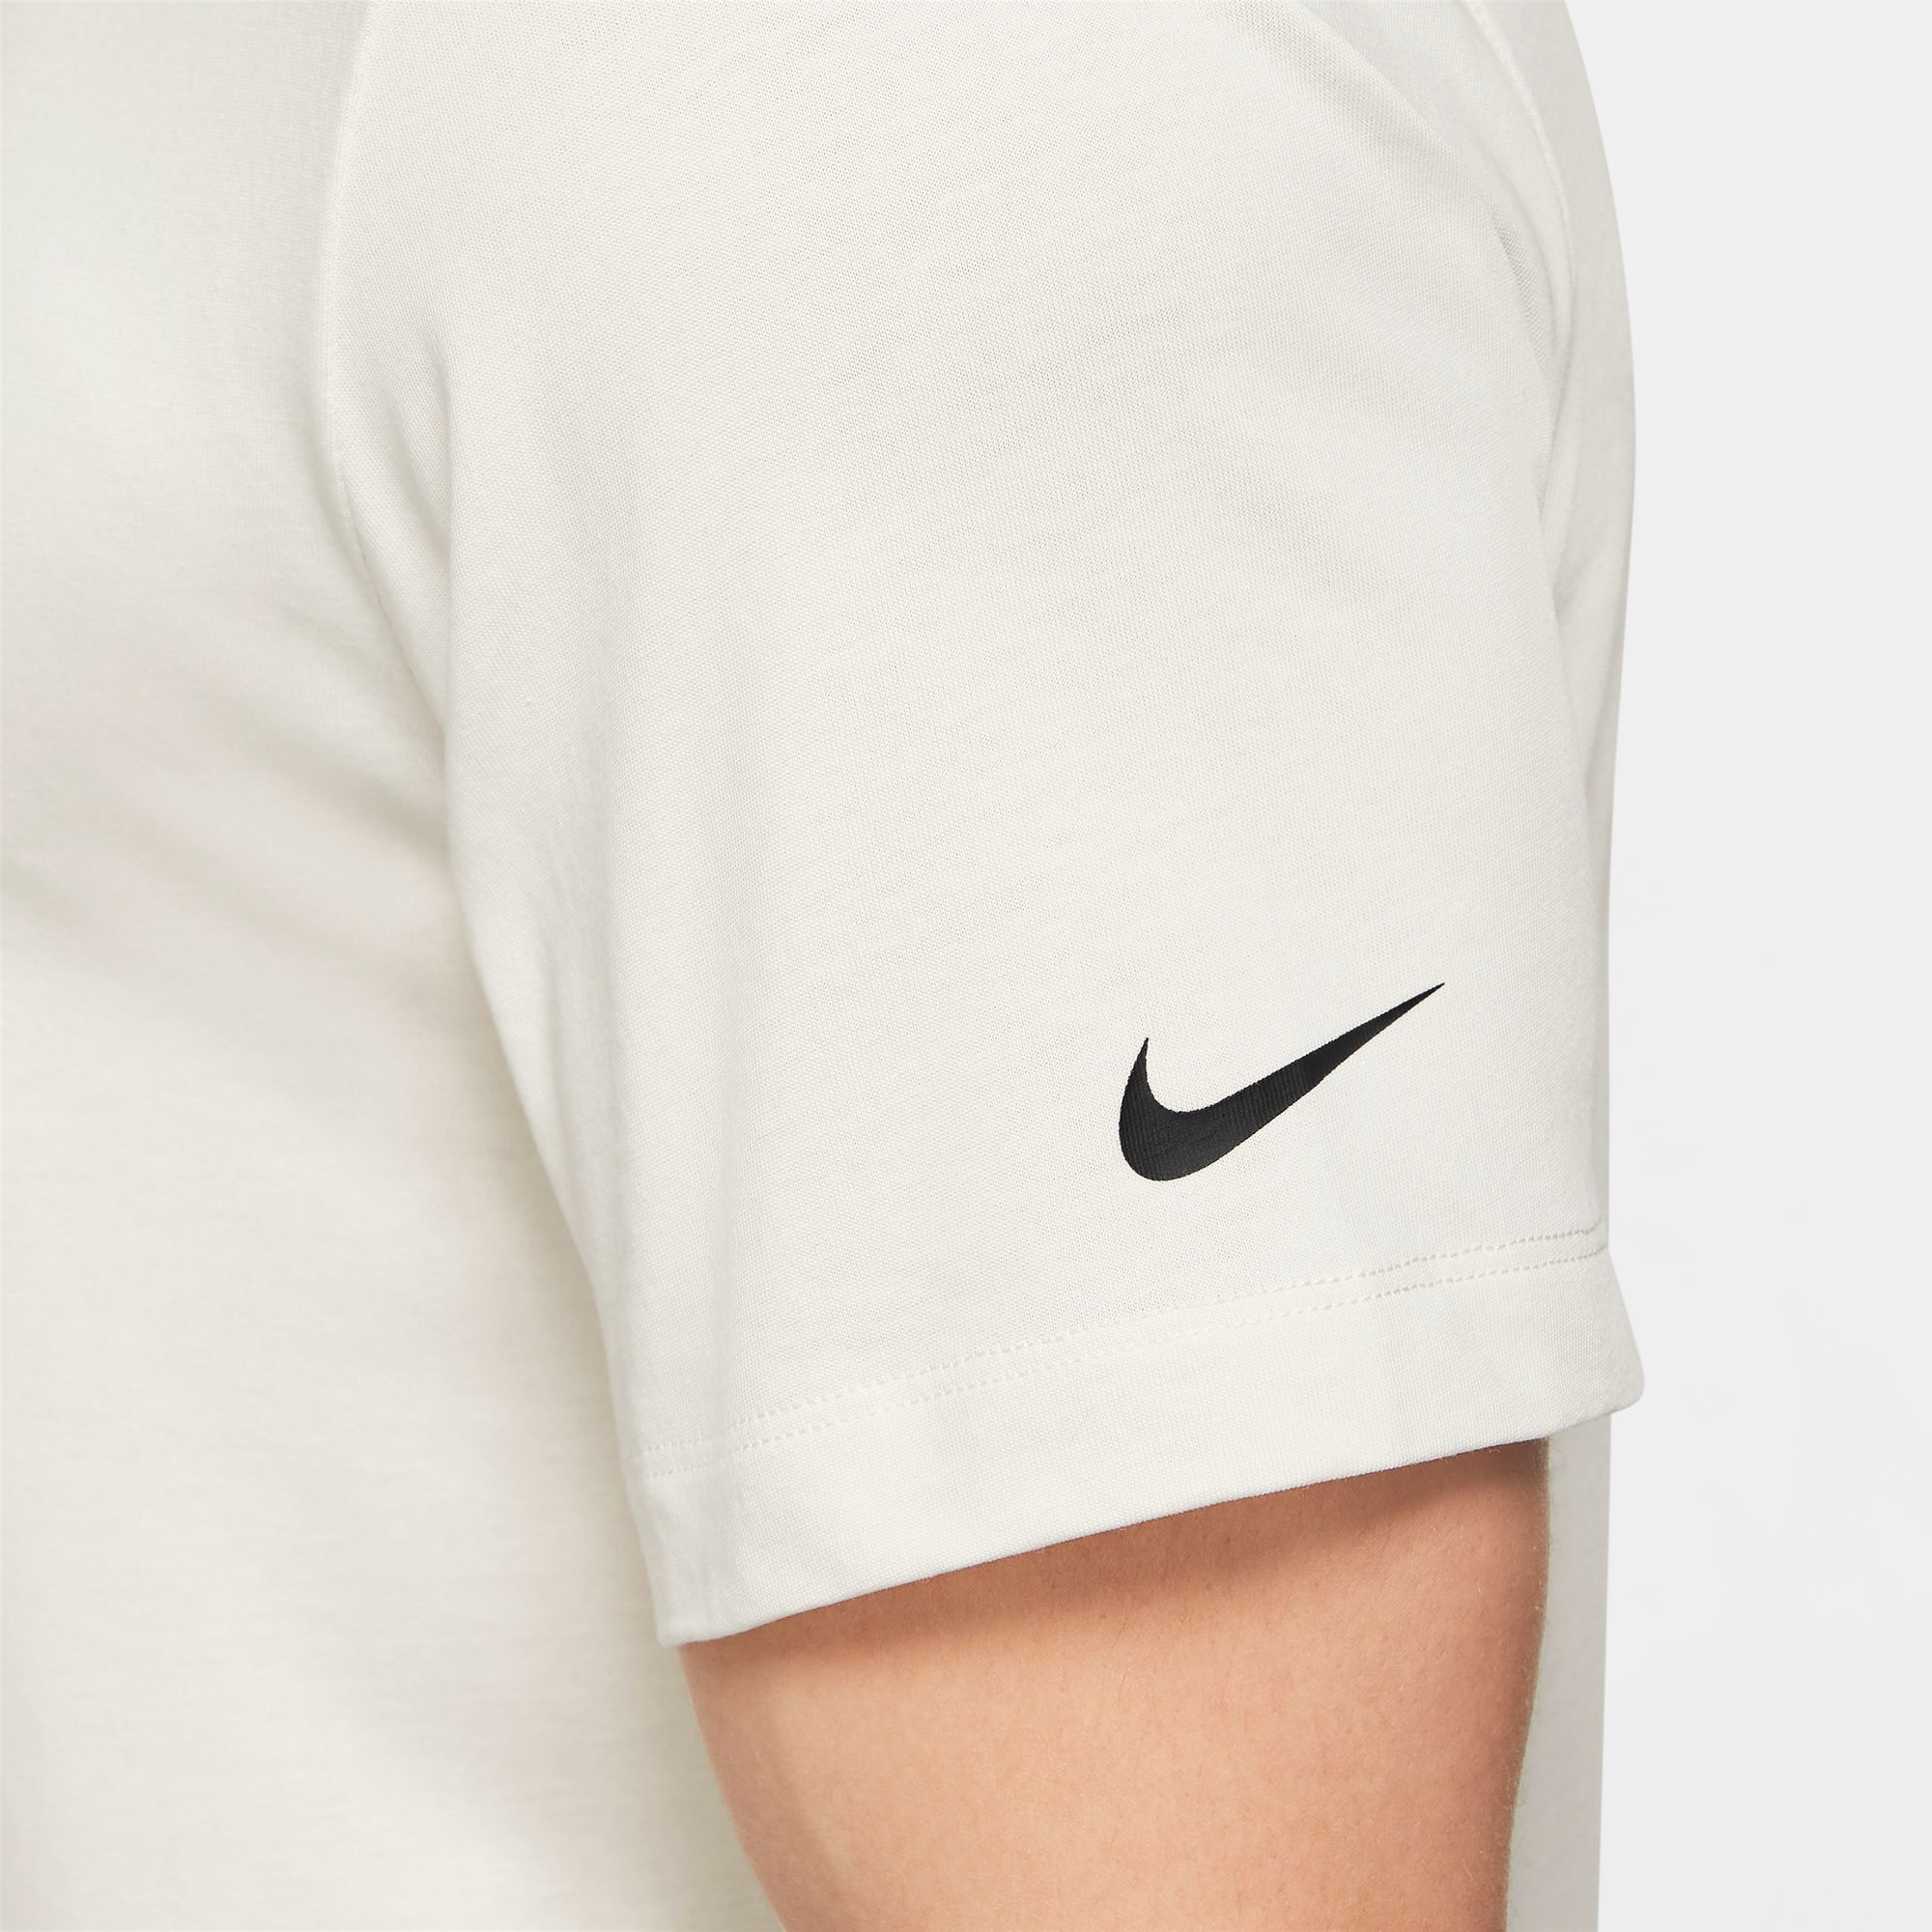 Nike Dri-FIT Run Division T-Shirt